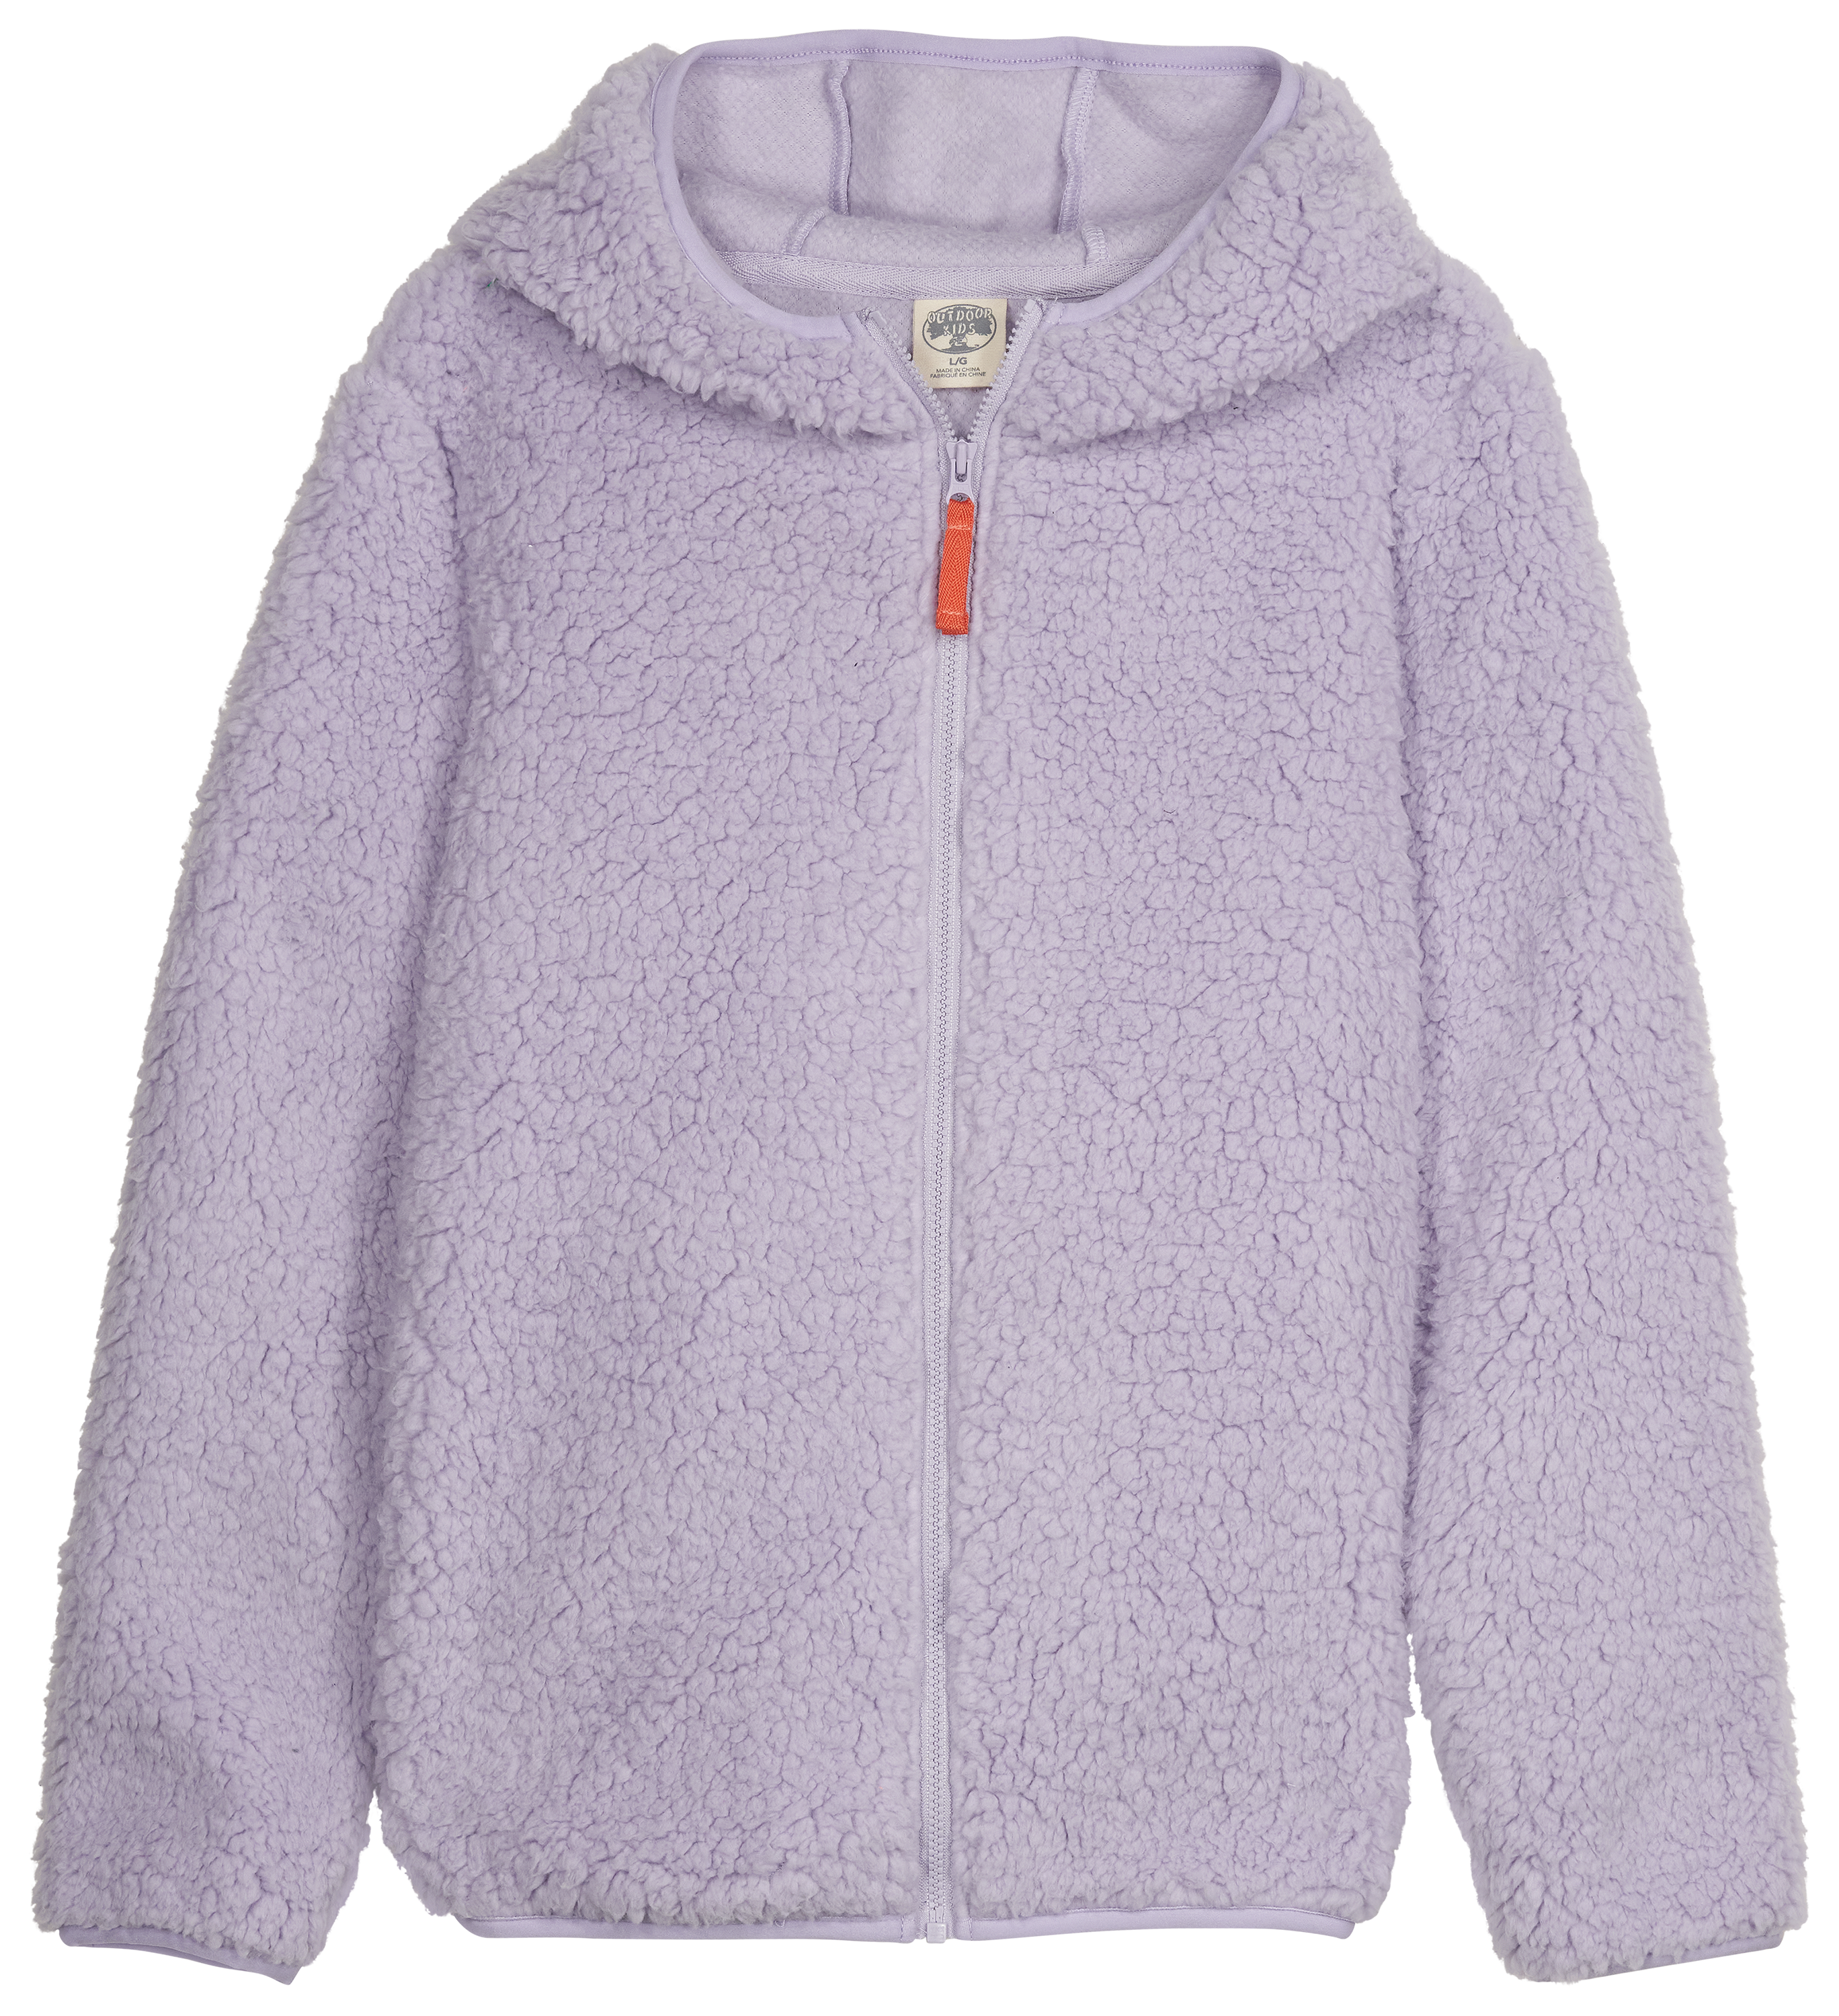 Outdoor Kids Cozy Fleece Full-Zip Hoodie for Kids - Lavender - L